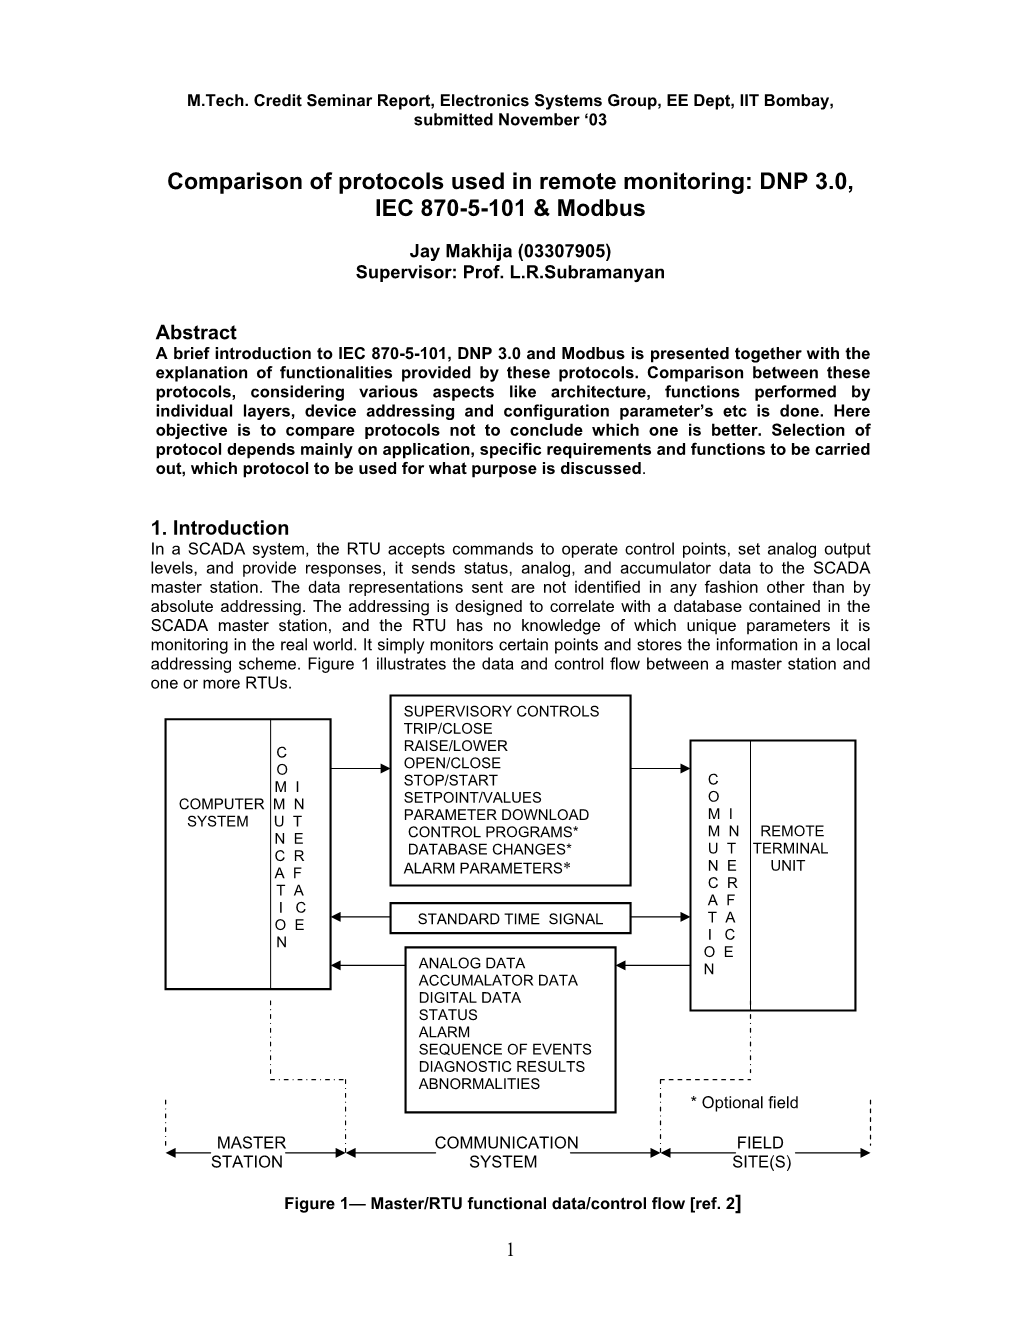 DNP 3.0, IEC 870-5-101 & Modbus